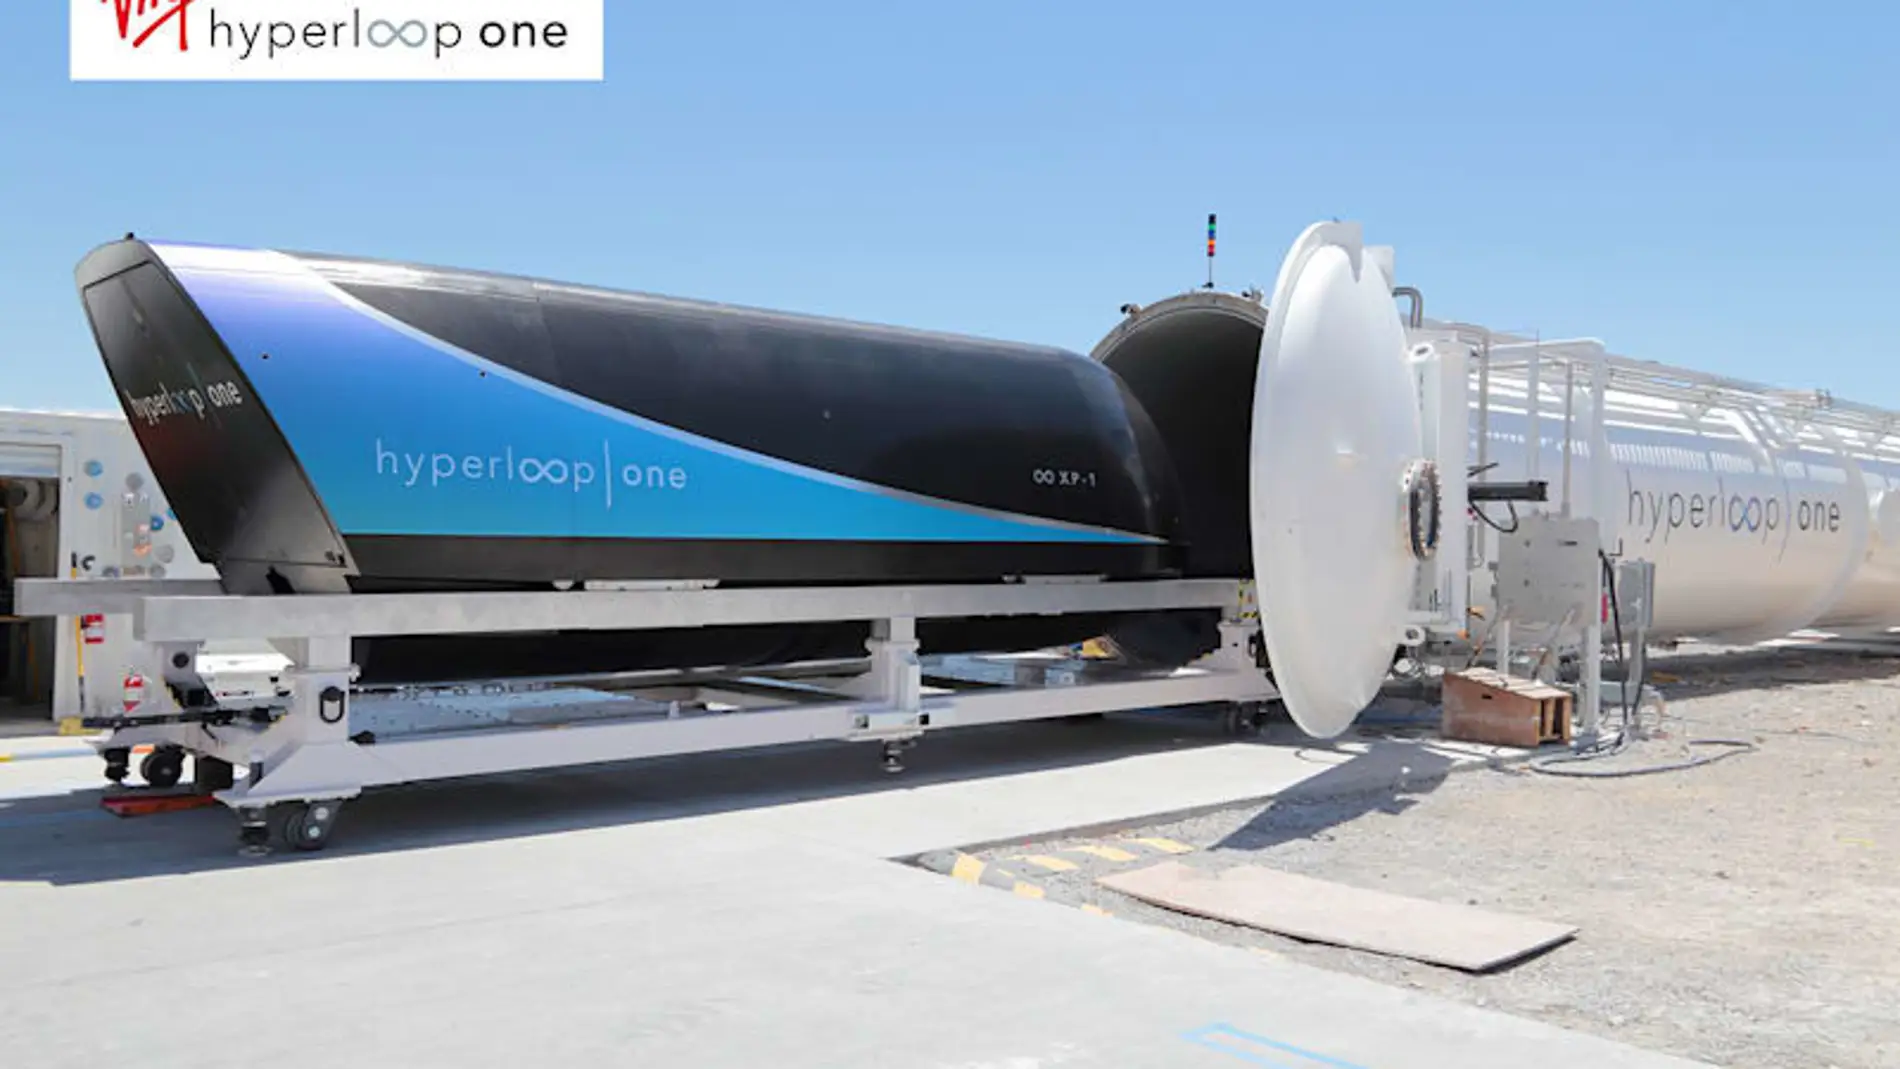 virgin-hyperloop-one-1217-01.jpg